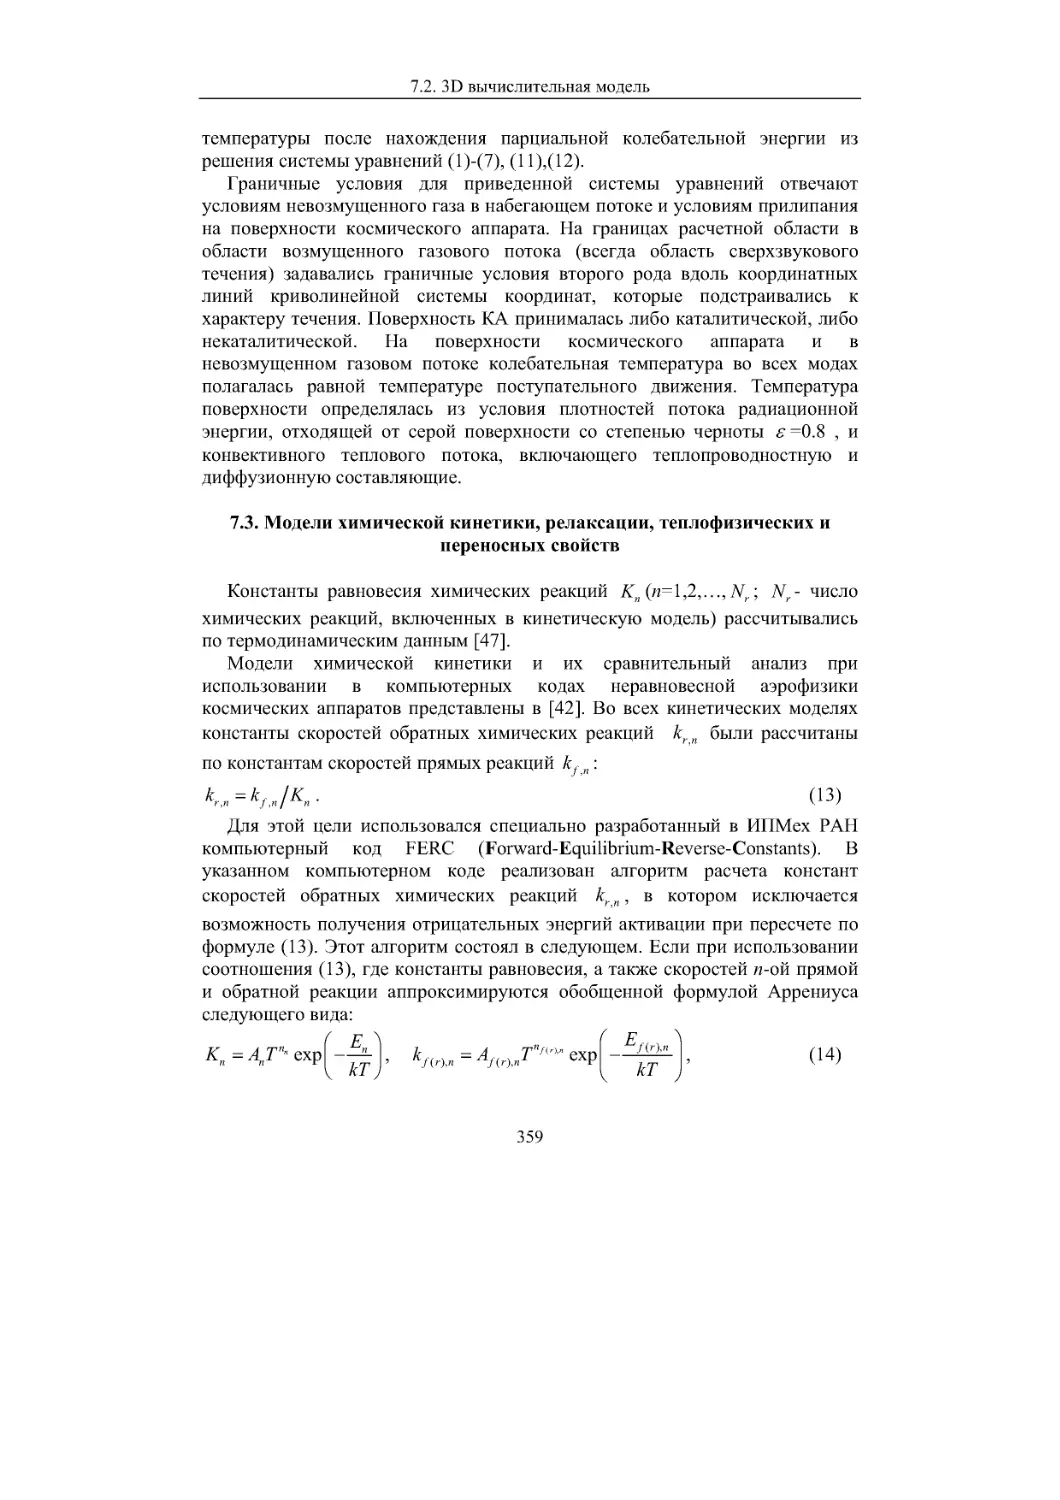 7.3. Модели химической кинетики, релаксации, теплофизических и переносных свойств